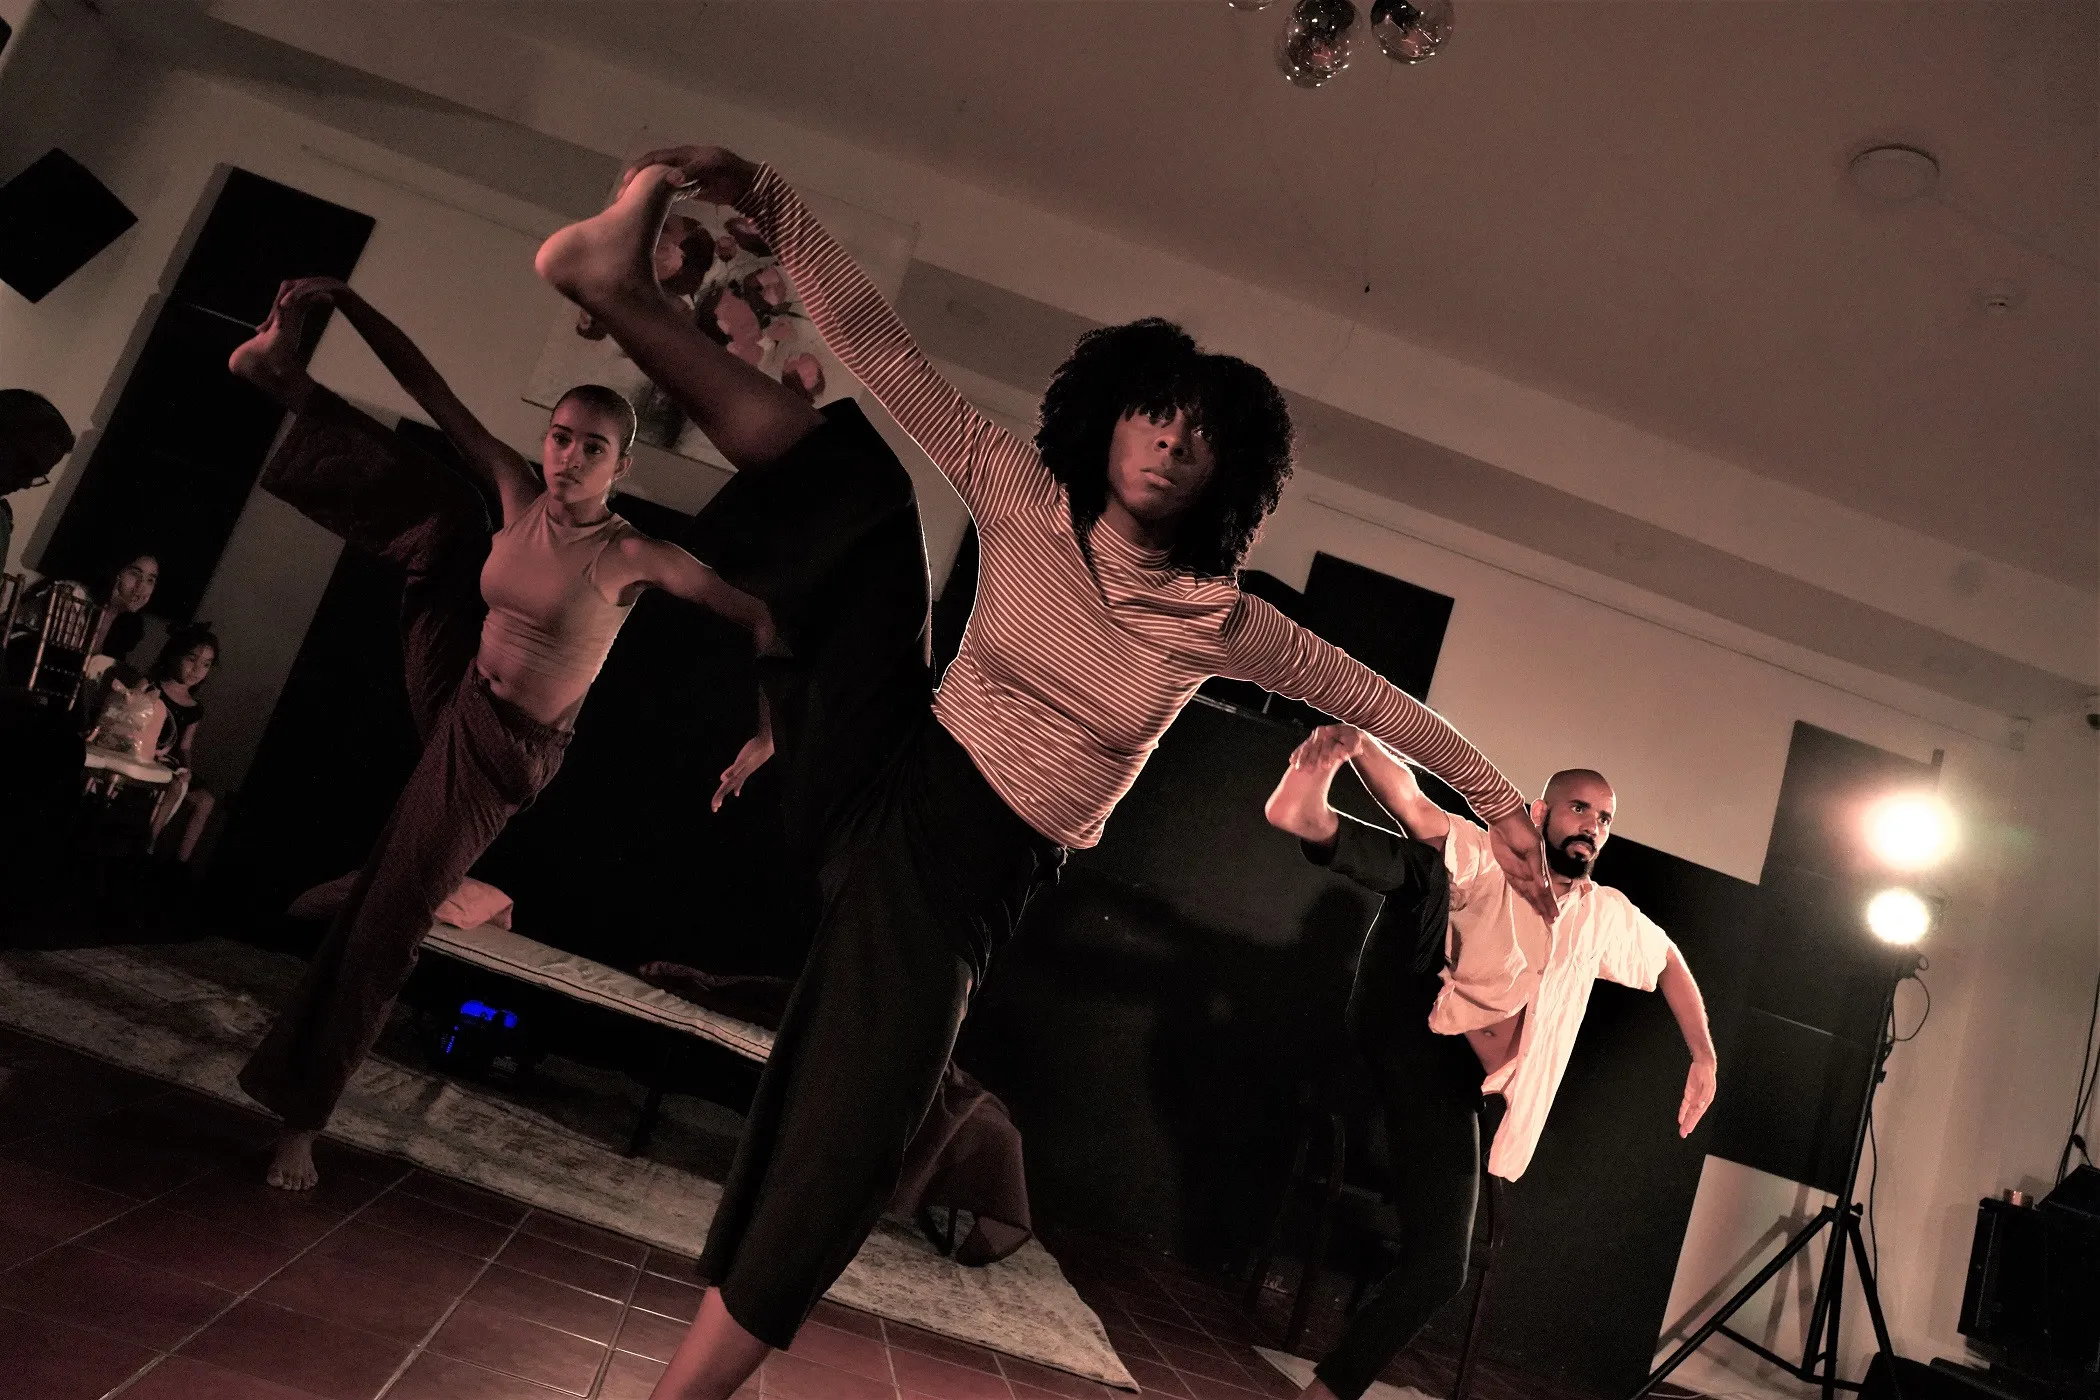 Con espectáculo A-isla-2, Centro Cultural Banreservas celebra Día de la Danza